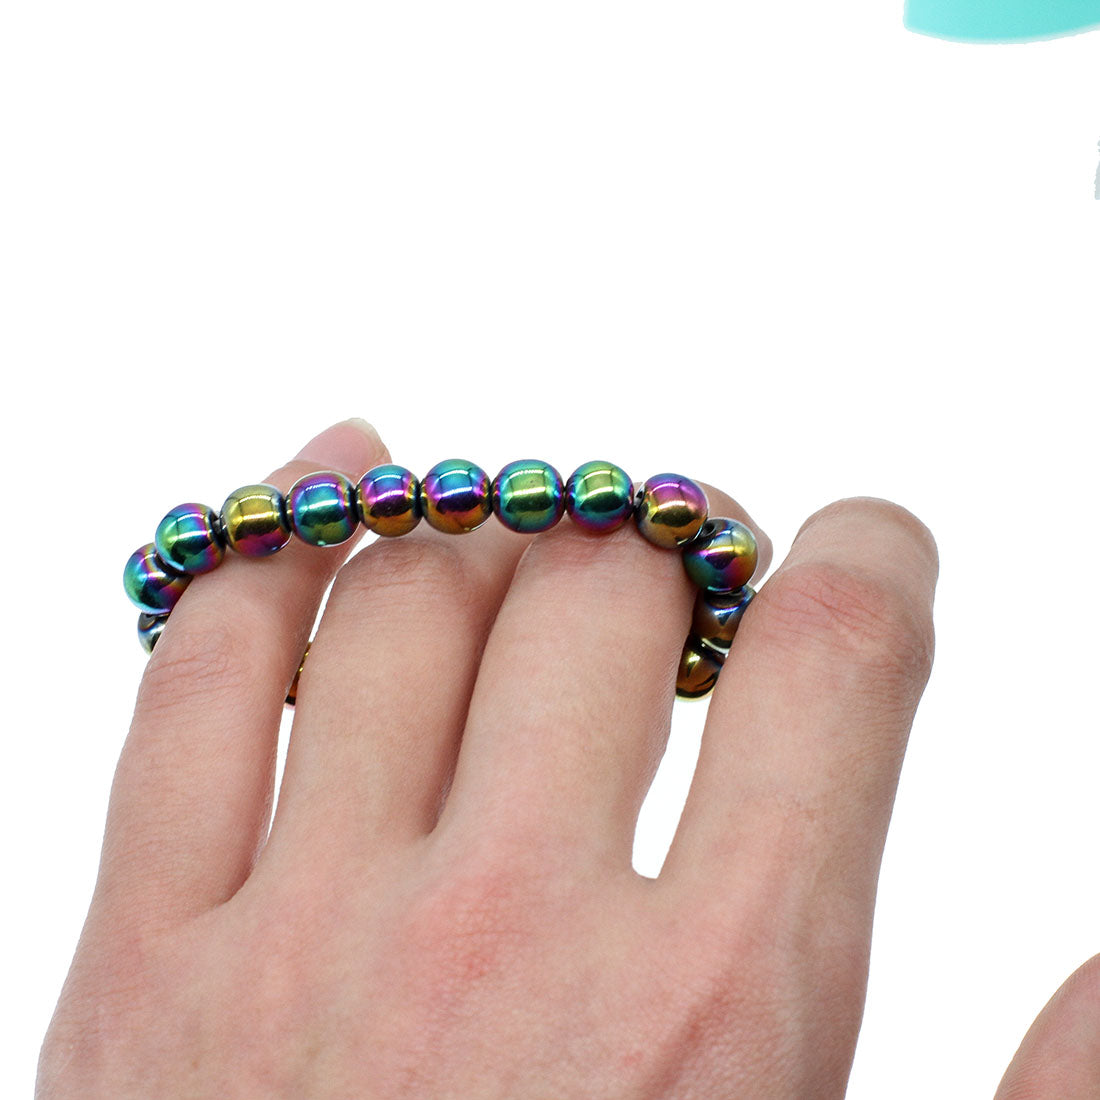 Magnetic Hematite Round Polished Bracelet Rainbow Aura - 8mm beads 23cm - China - NEW1122